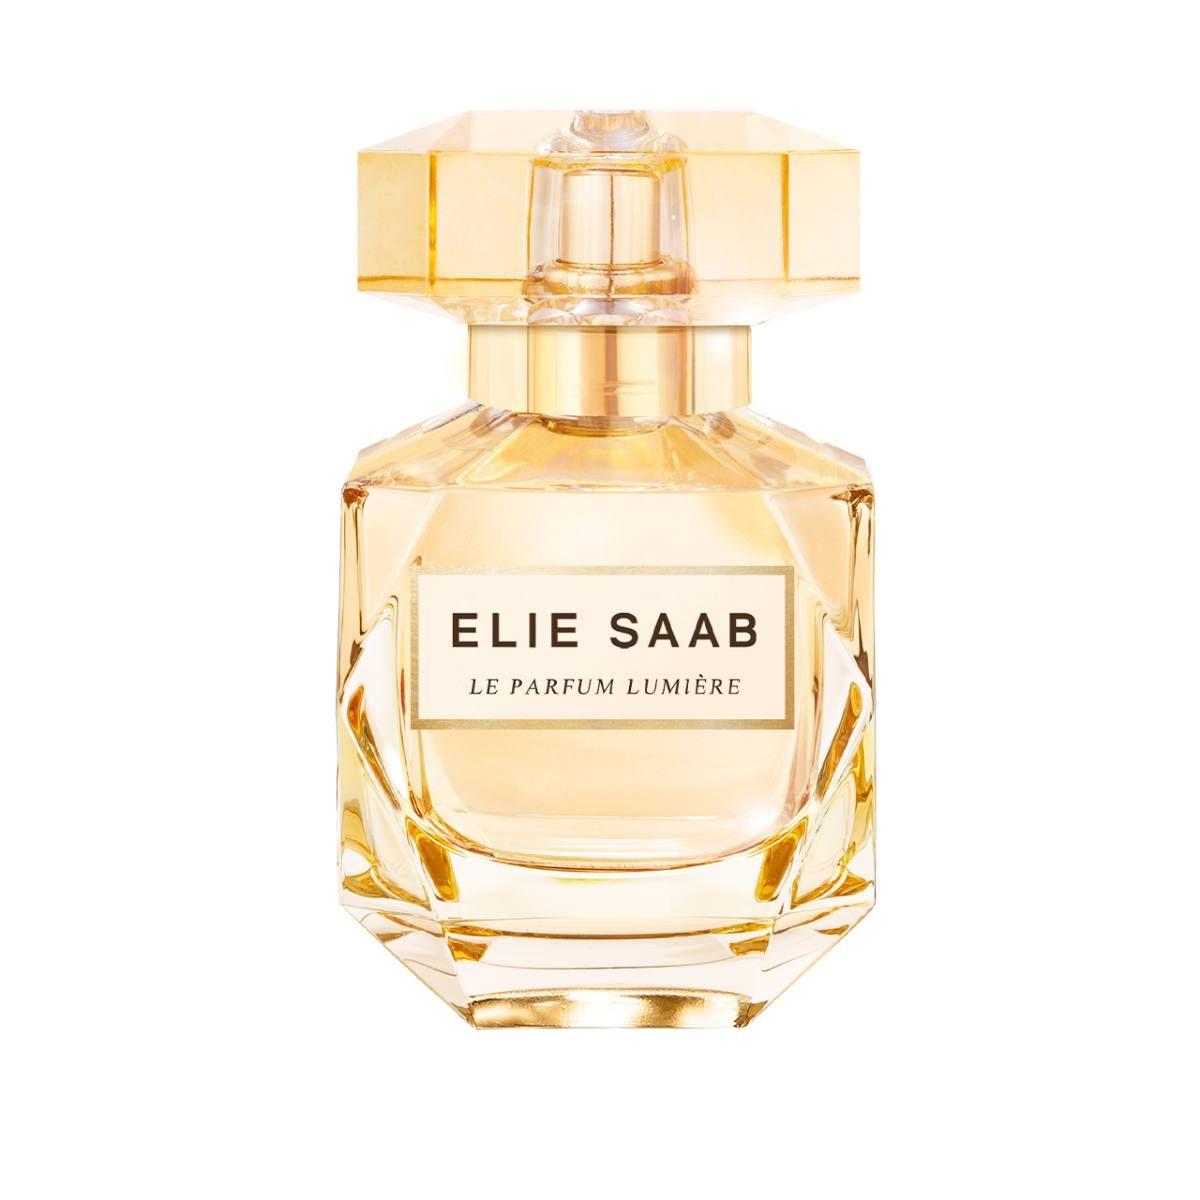 Le Parfum Lumière de Elie Saab